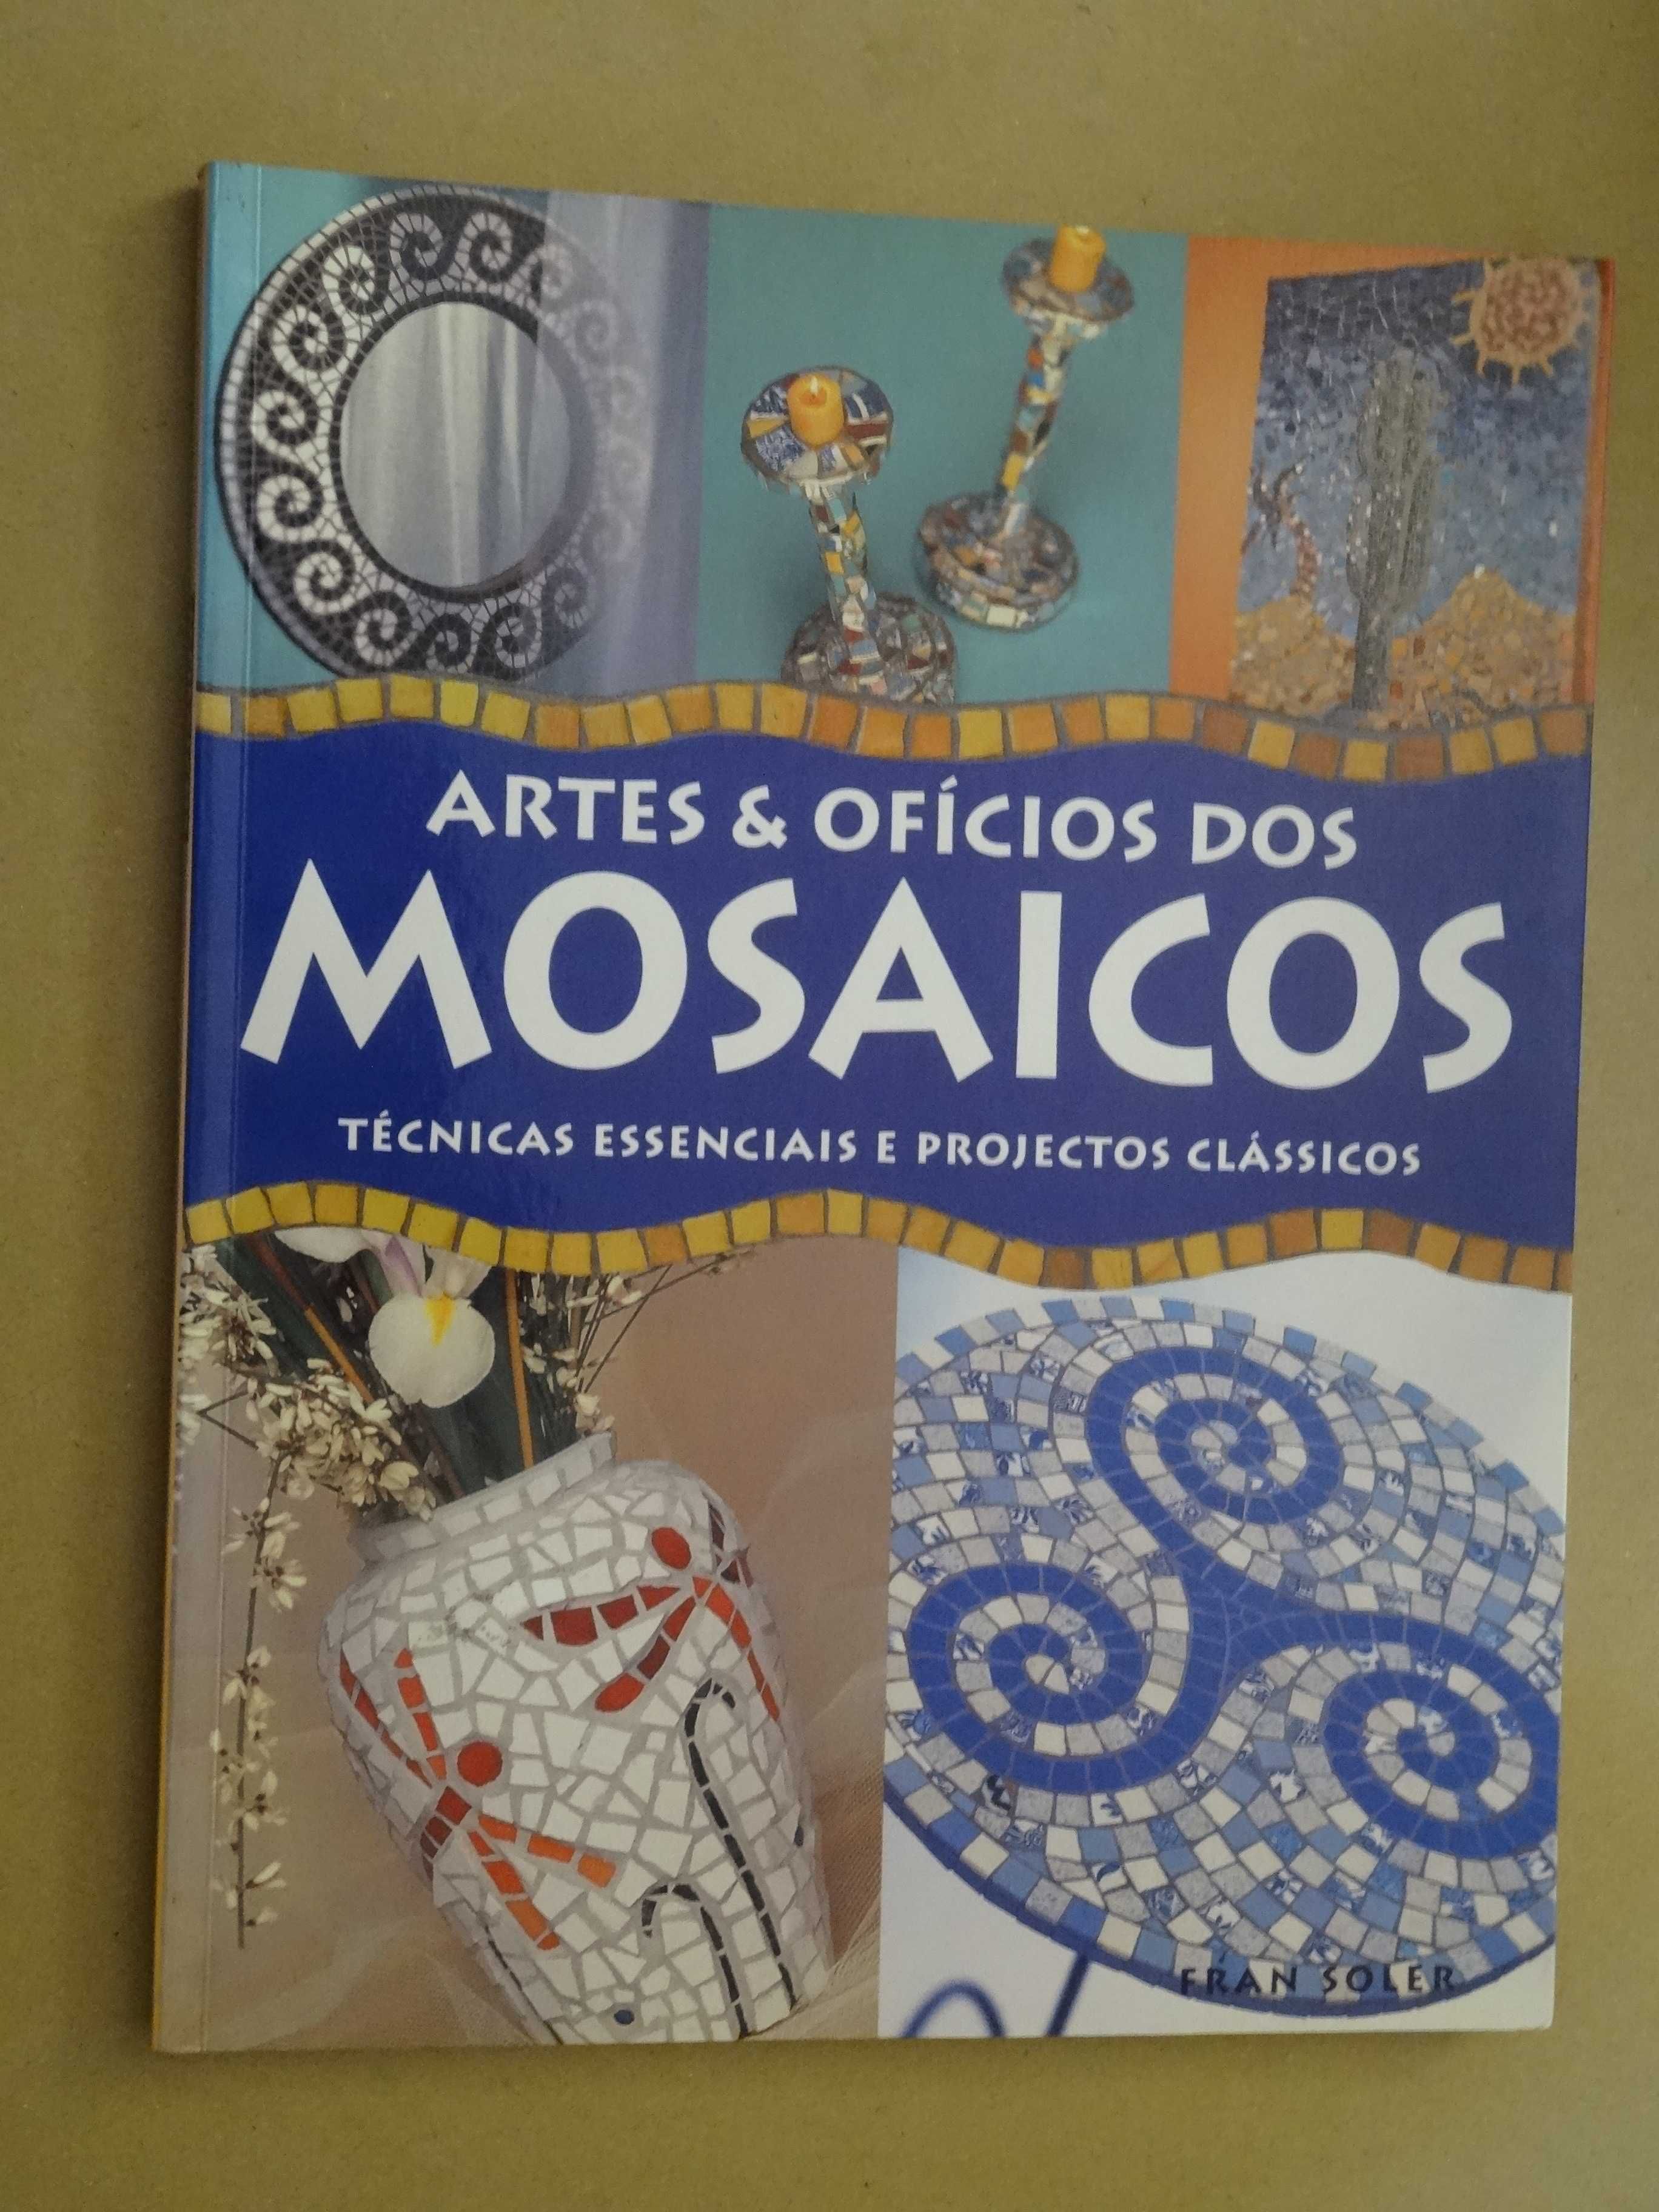 Artes e Ofícios dos Mosaicos de Fran Soler